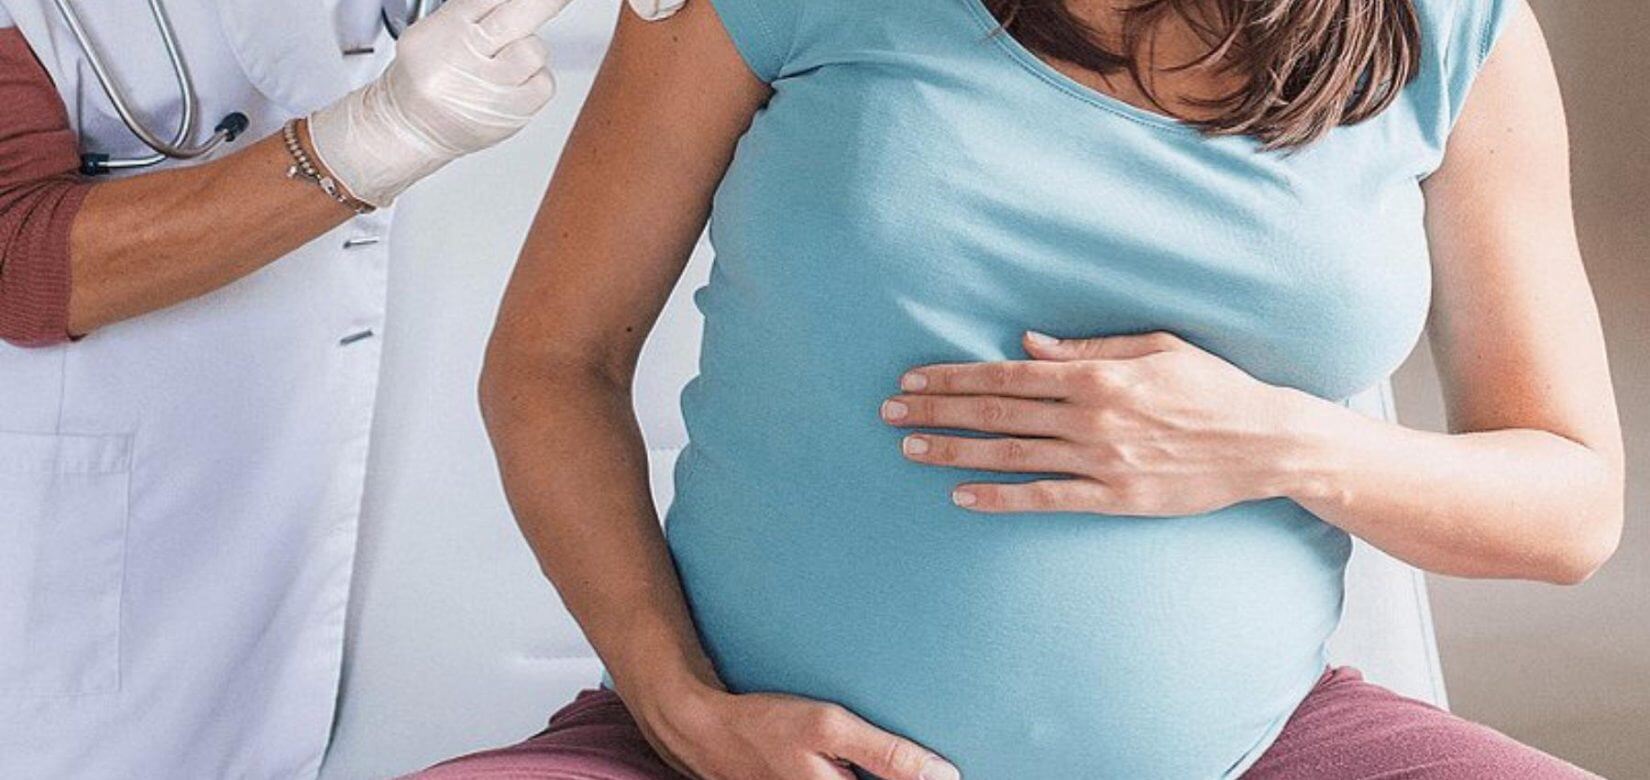 Σκουτέλης: "Όχι" στο εμβόλιο AstraZeneca στις έγκυες και μέλλουσες μητέρες